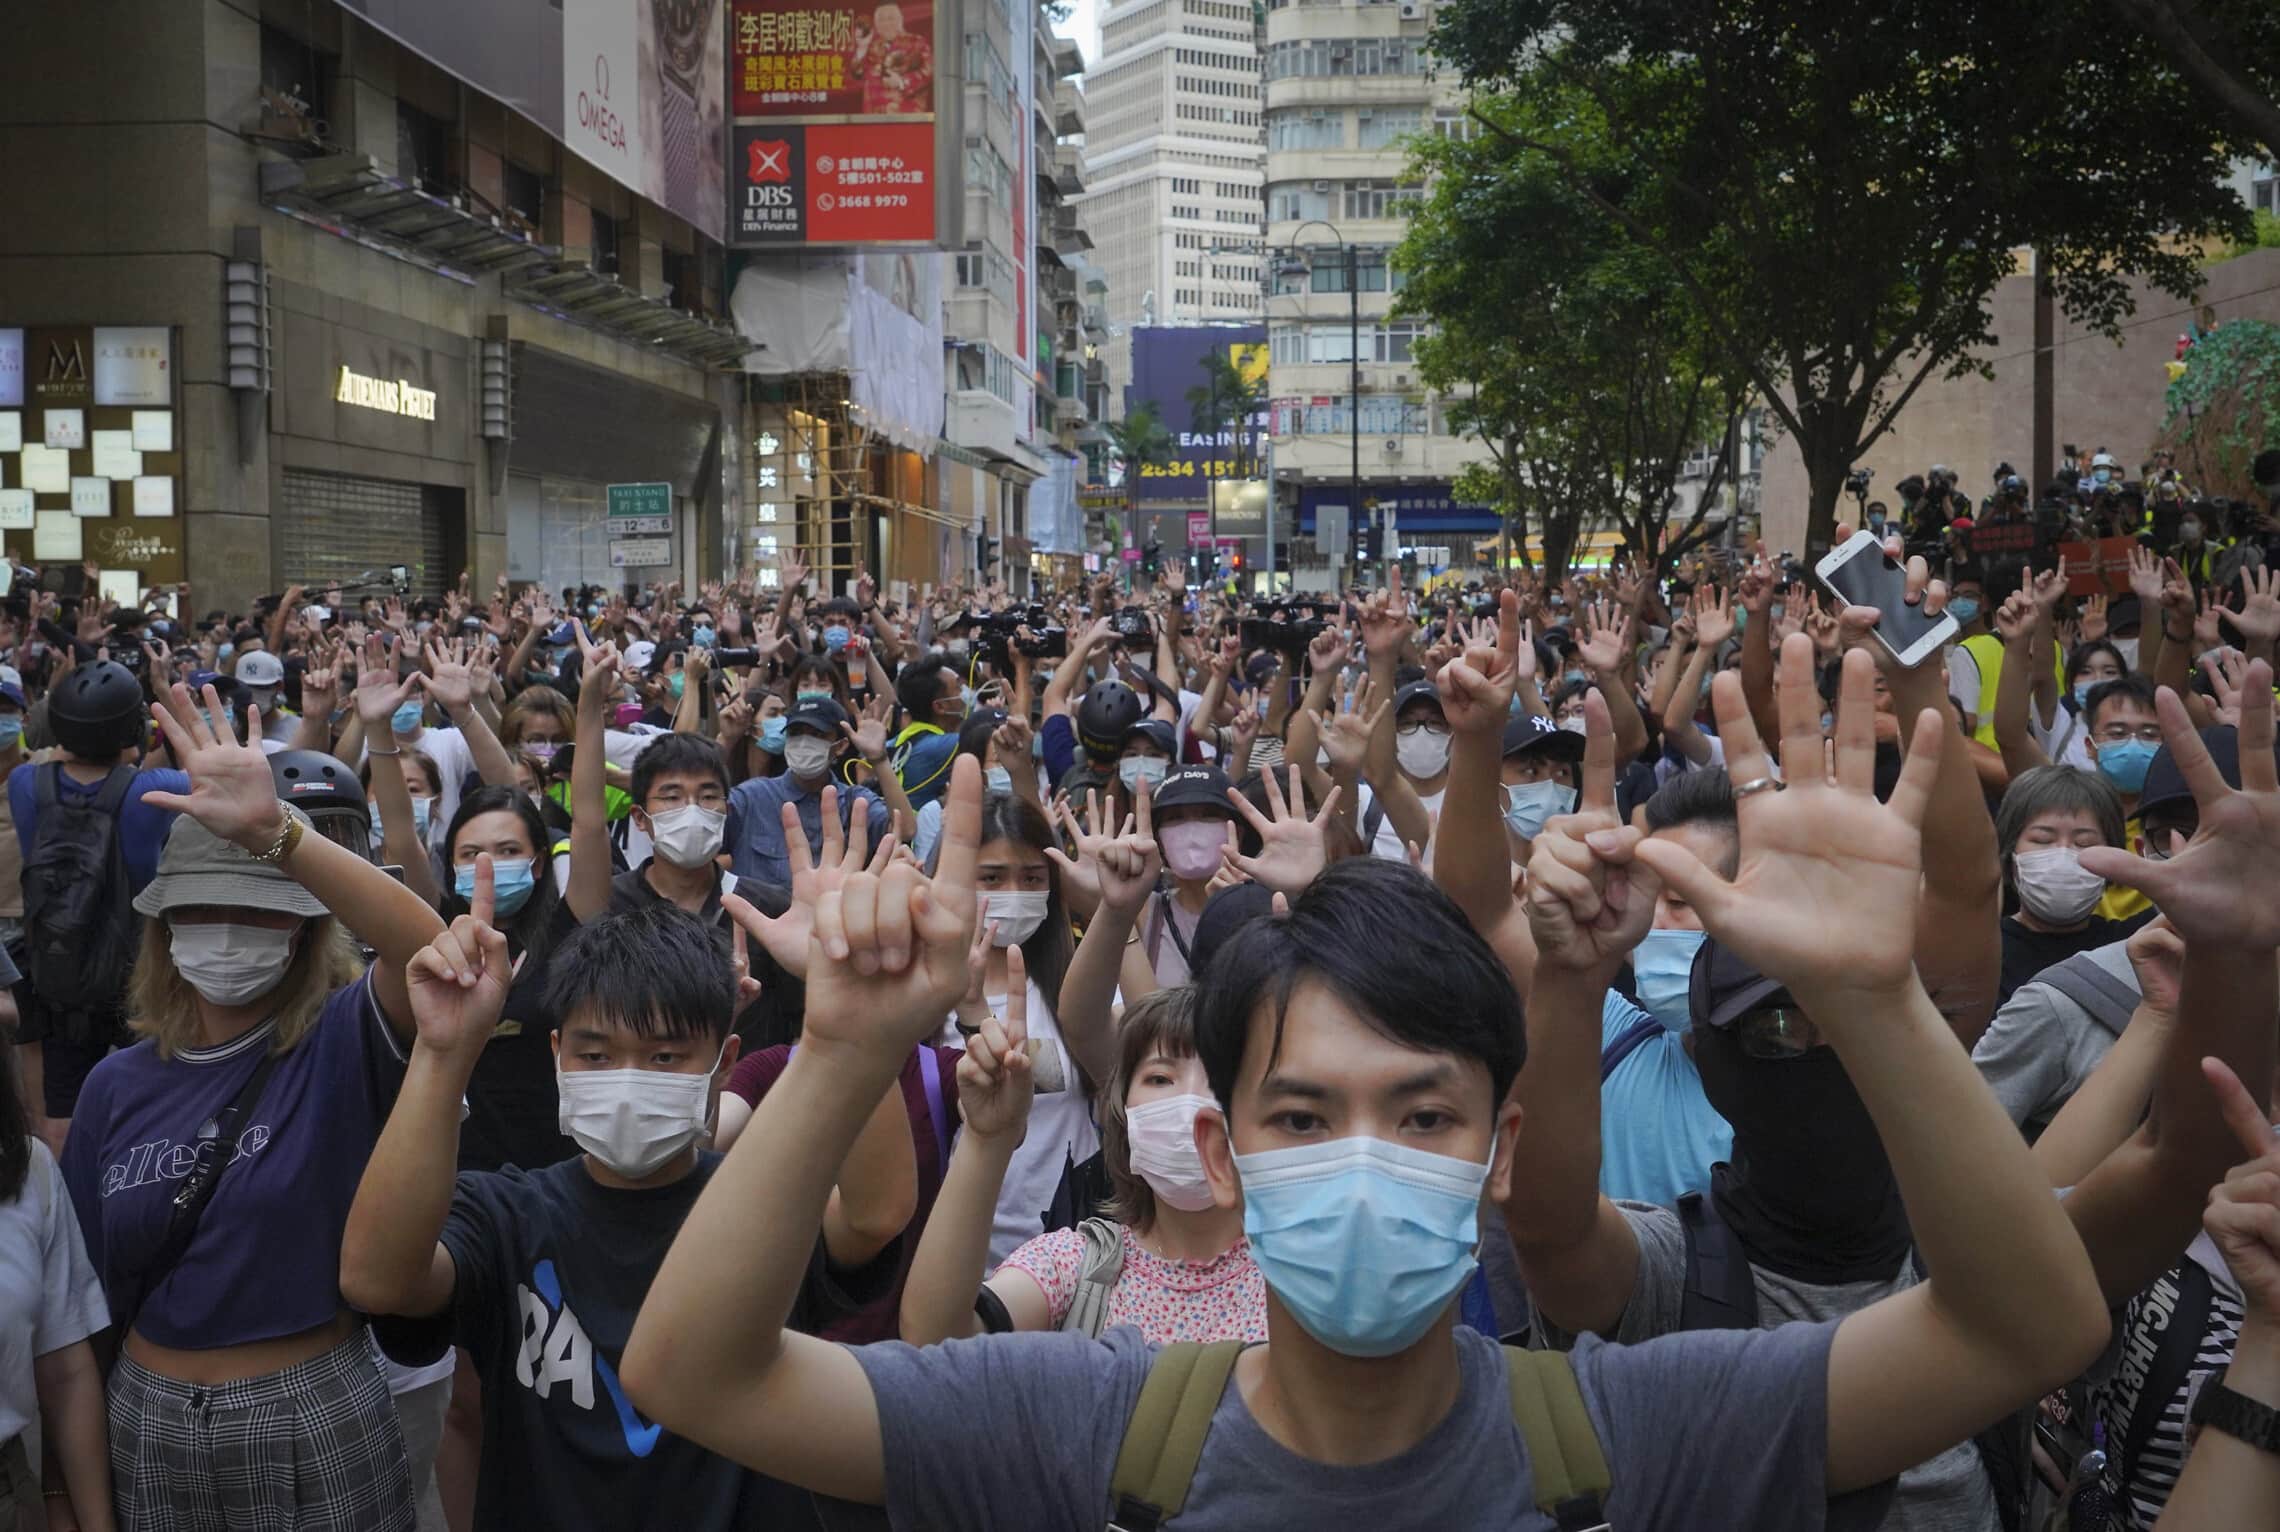 מפגינים מוחים נגד חוק הביטחון הלאומי בהונג קונג ביום השנה למסירה של הונג קונג לסין, 1 ביולי 2020 (צילום: AP Photo/Vincent Yu, file)